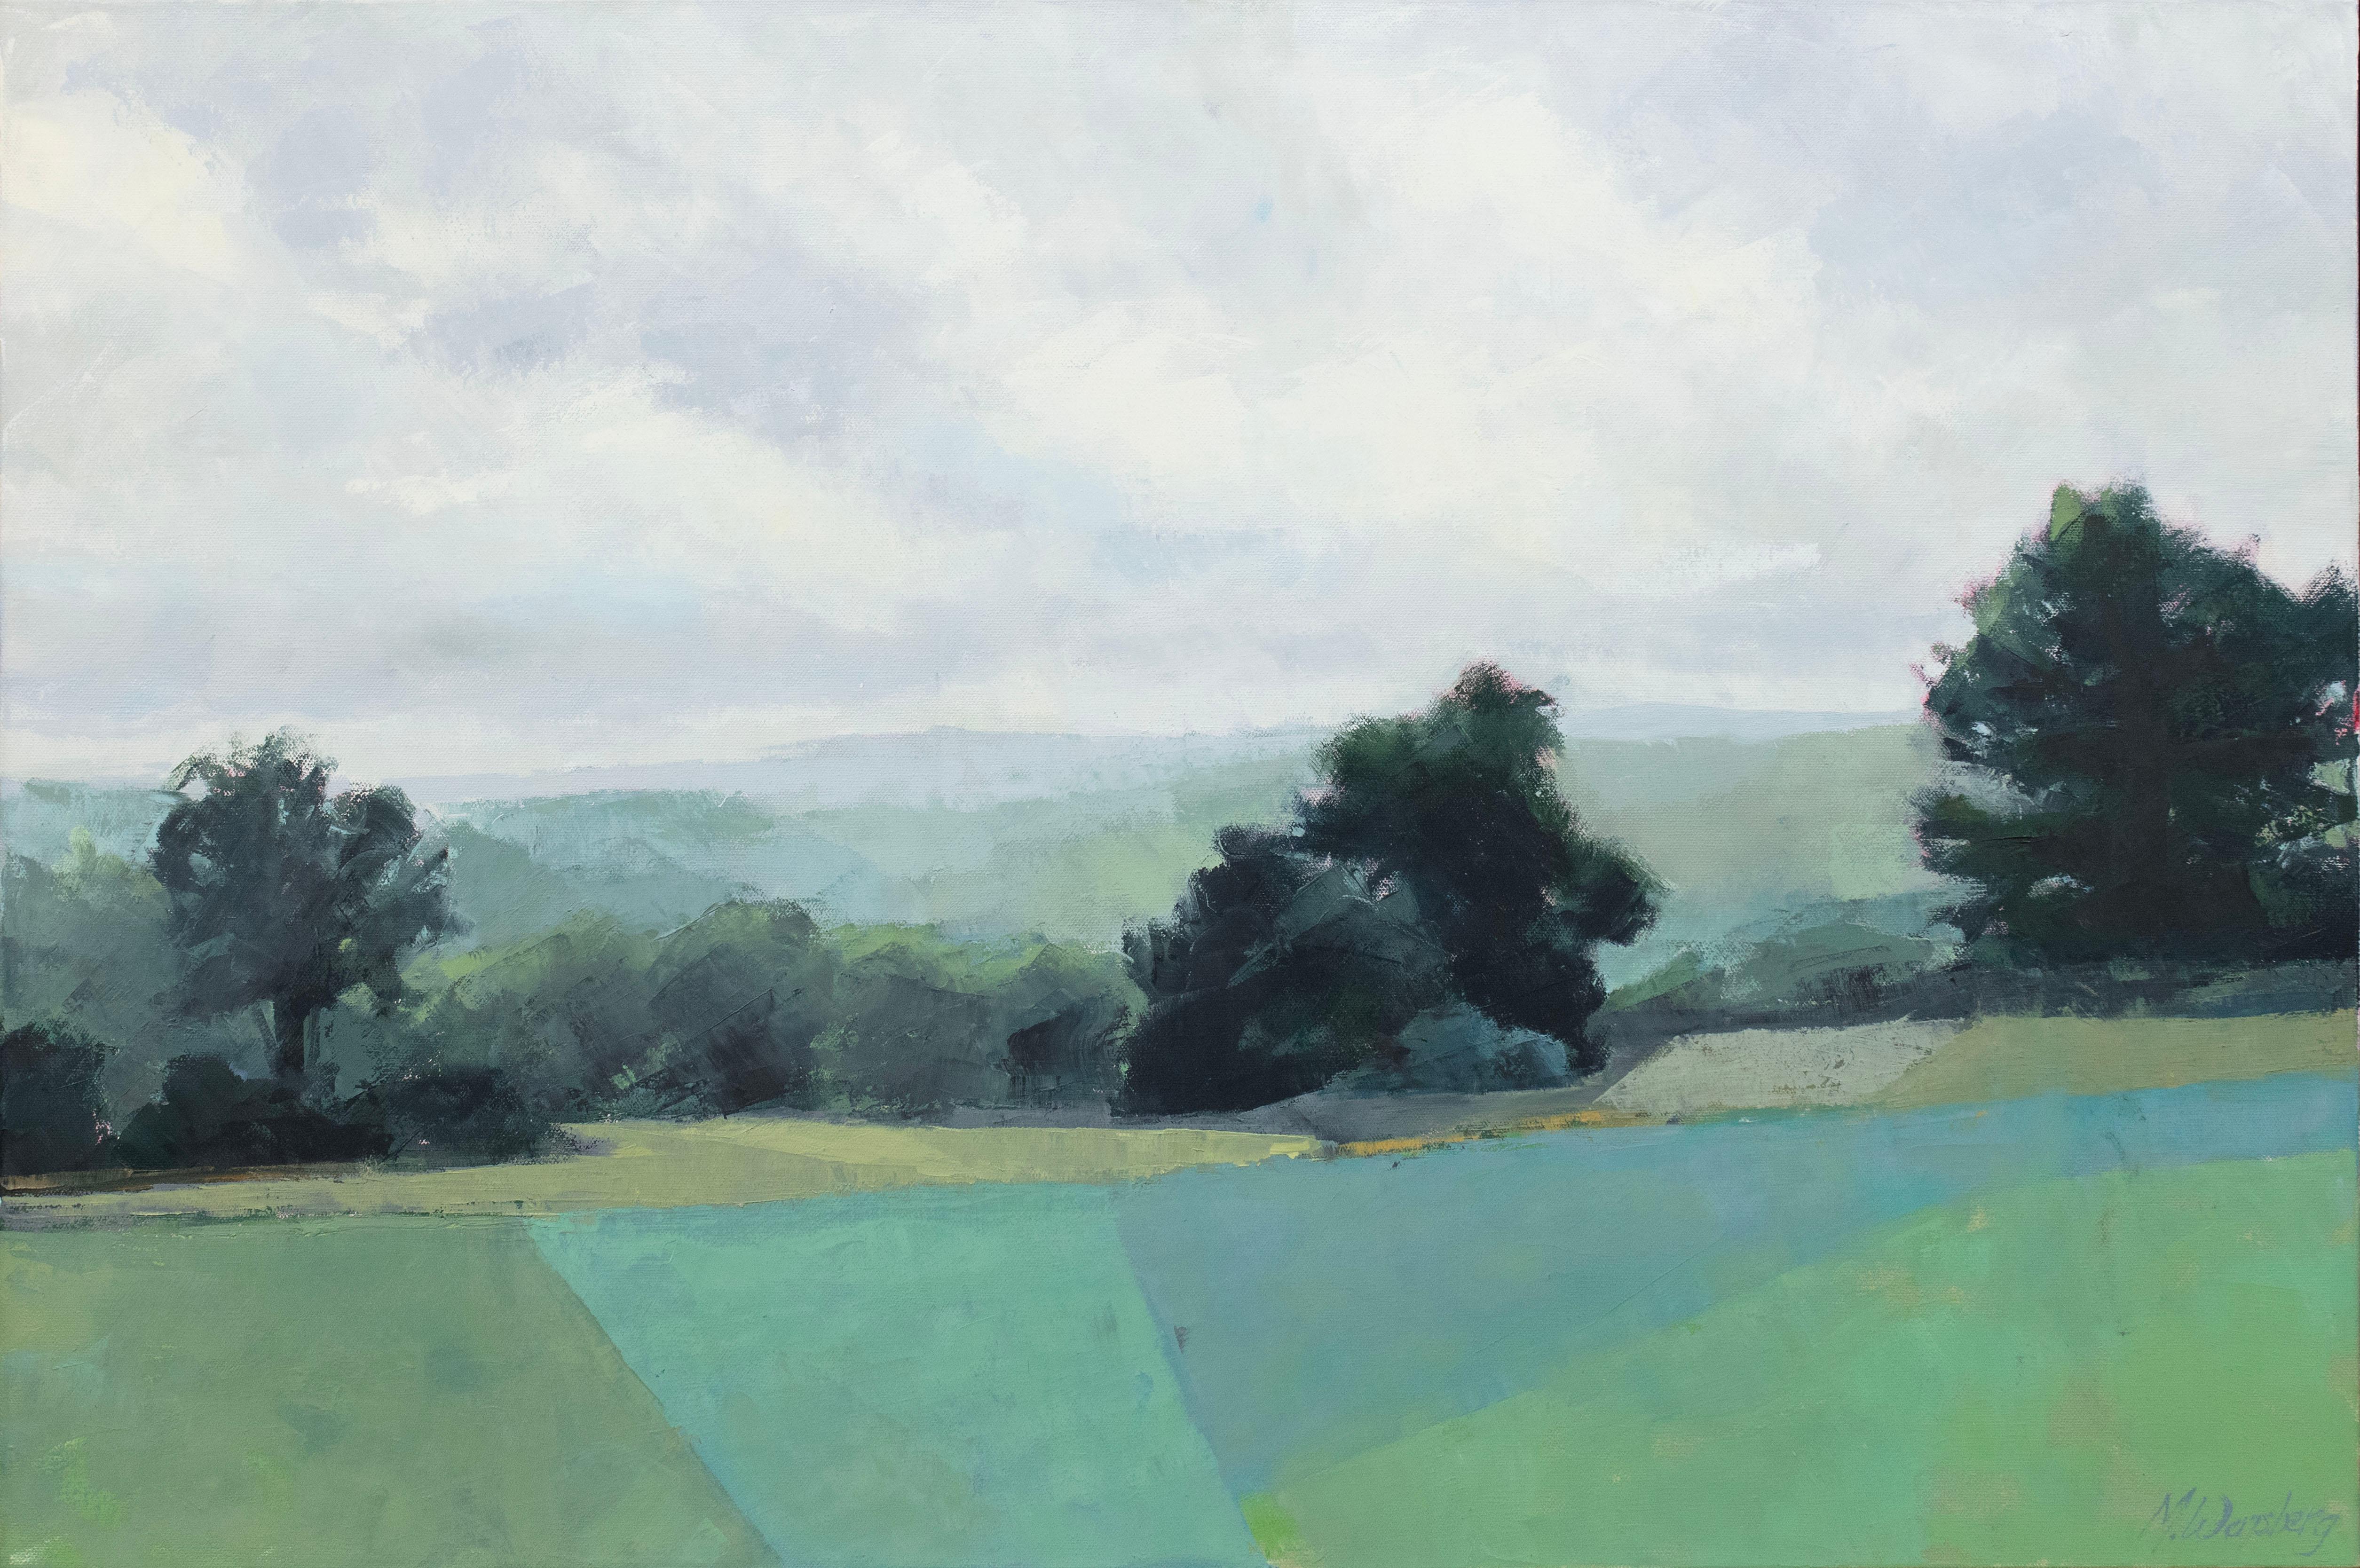 Dieses abstrakte Landschaftsgemälde von Molly Doe Wensberg zeichnet sich durch eine kühle blaue und grüne Farbpalette aus und fängt eine Landschaftsszene mit üppigem Laub und sanften Hügeln ein. Der Künstler abstrahiert bestimmte Bereiche des Grases